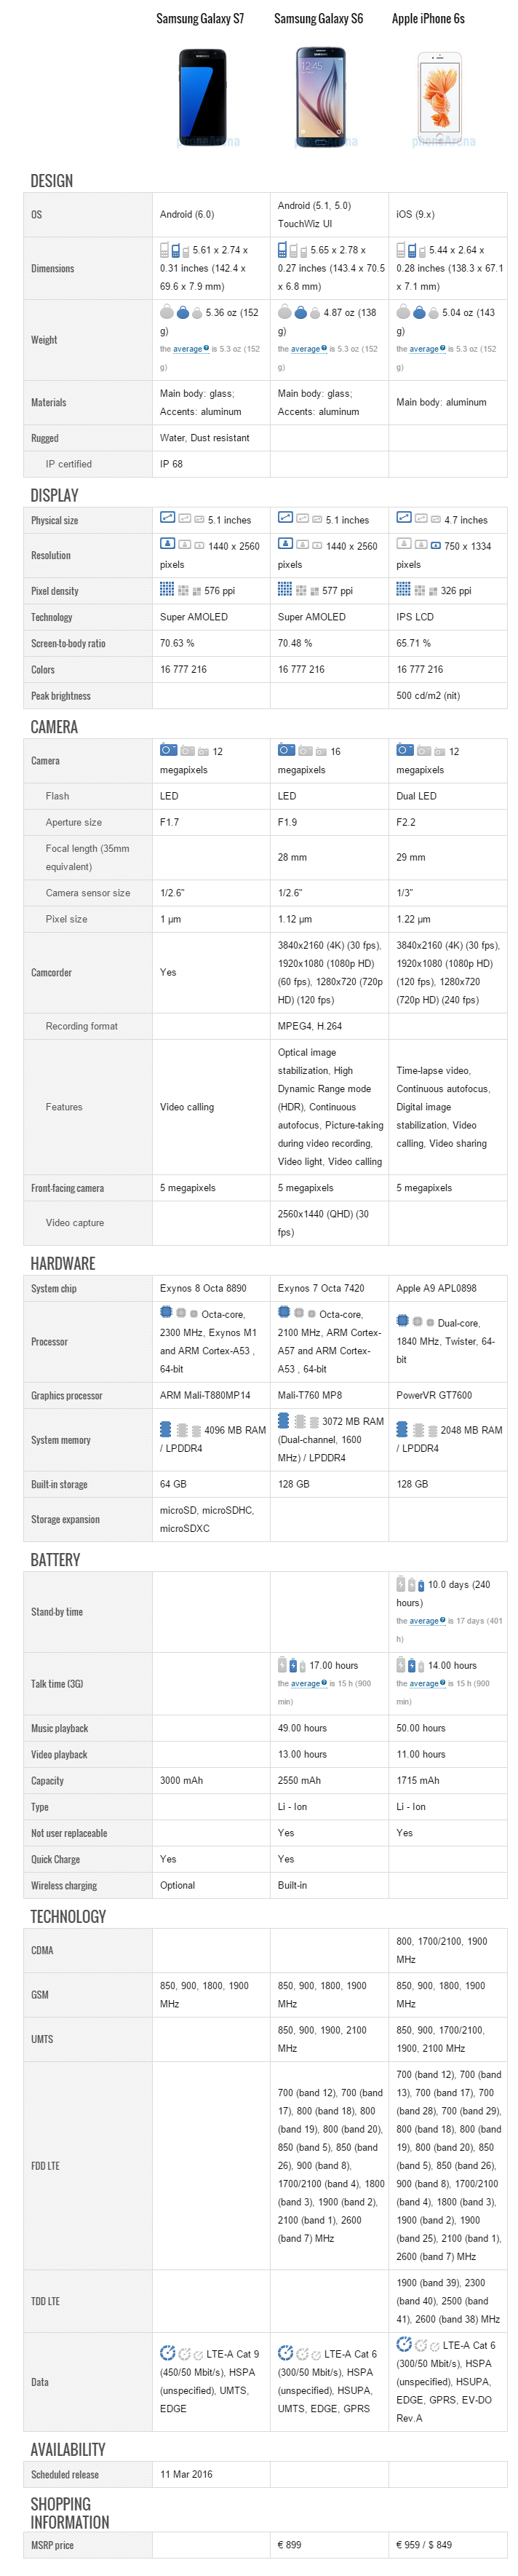 Samsung Galaxy S7 contre la concurrence - iDevice.ro